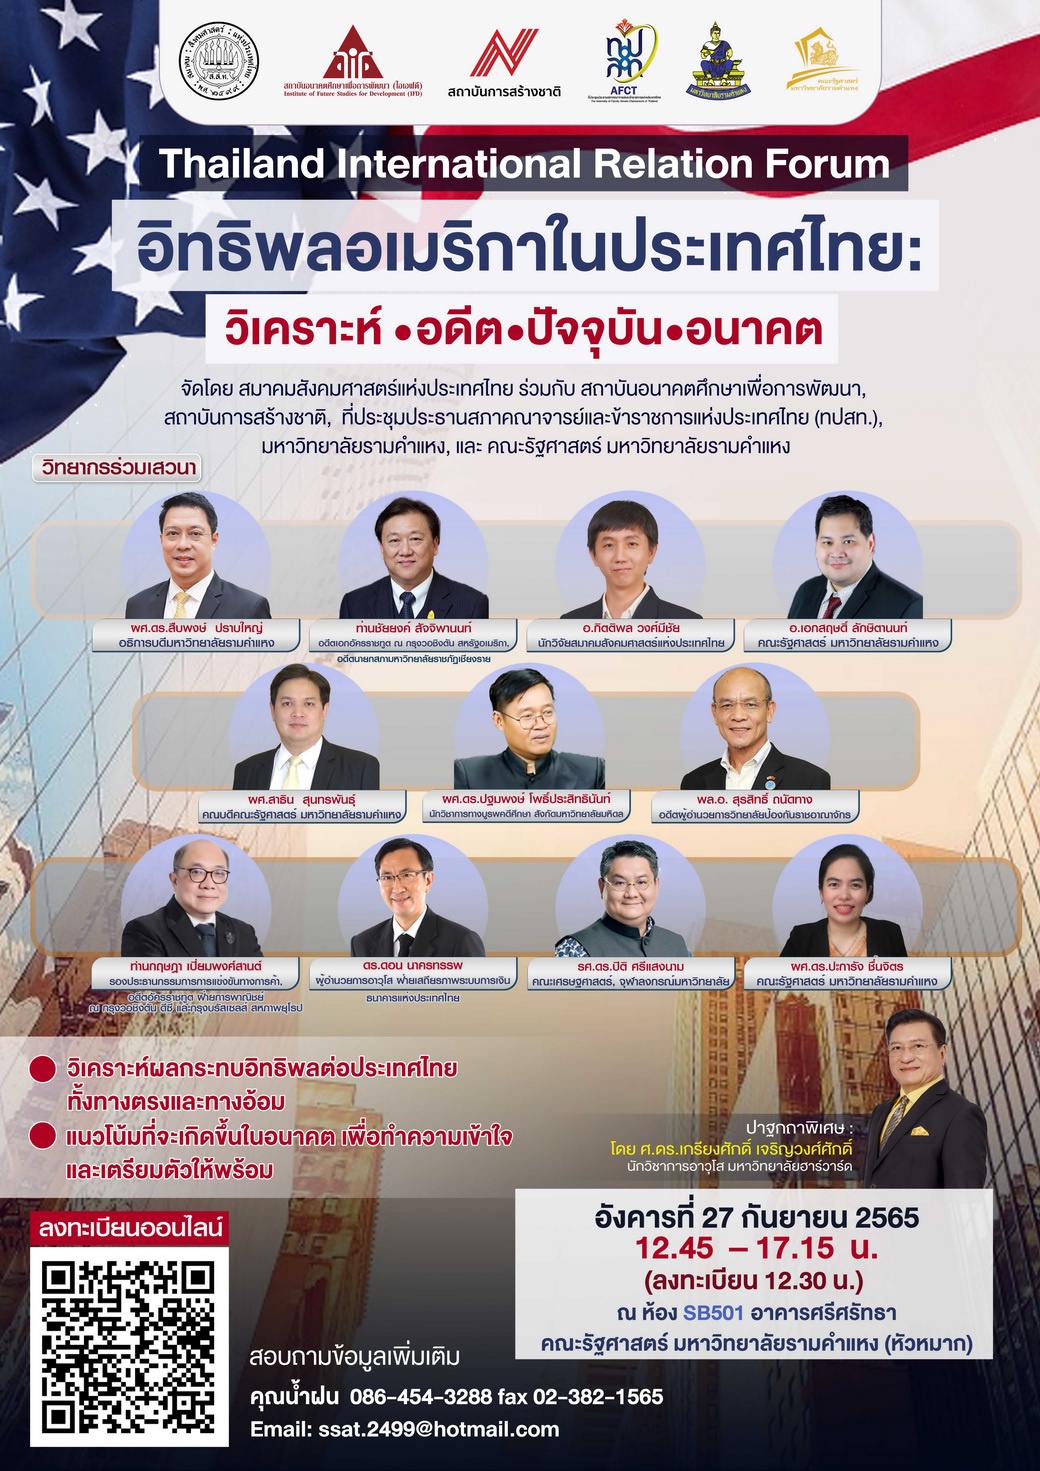 'ศ.ดร.เกรียงศักดิ์' ประธานสถาบันการสร้างชาติ นำปาฐกถา 'อิทธิพลอเมริกาในประเทศไทย' ที่ ม.ร. 27 ก.ย.นี้